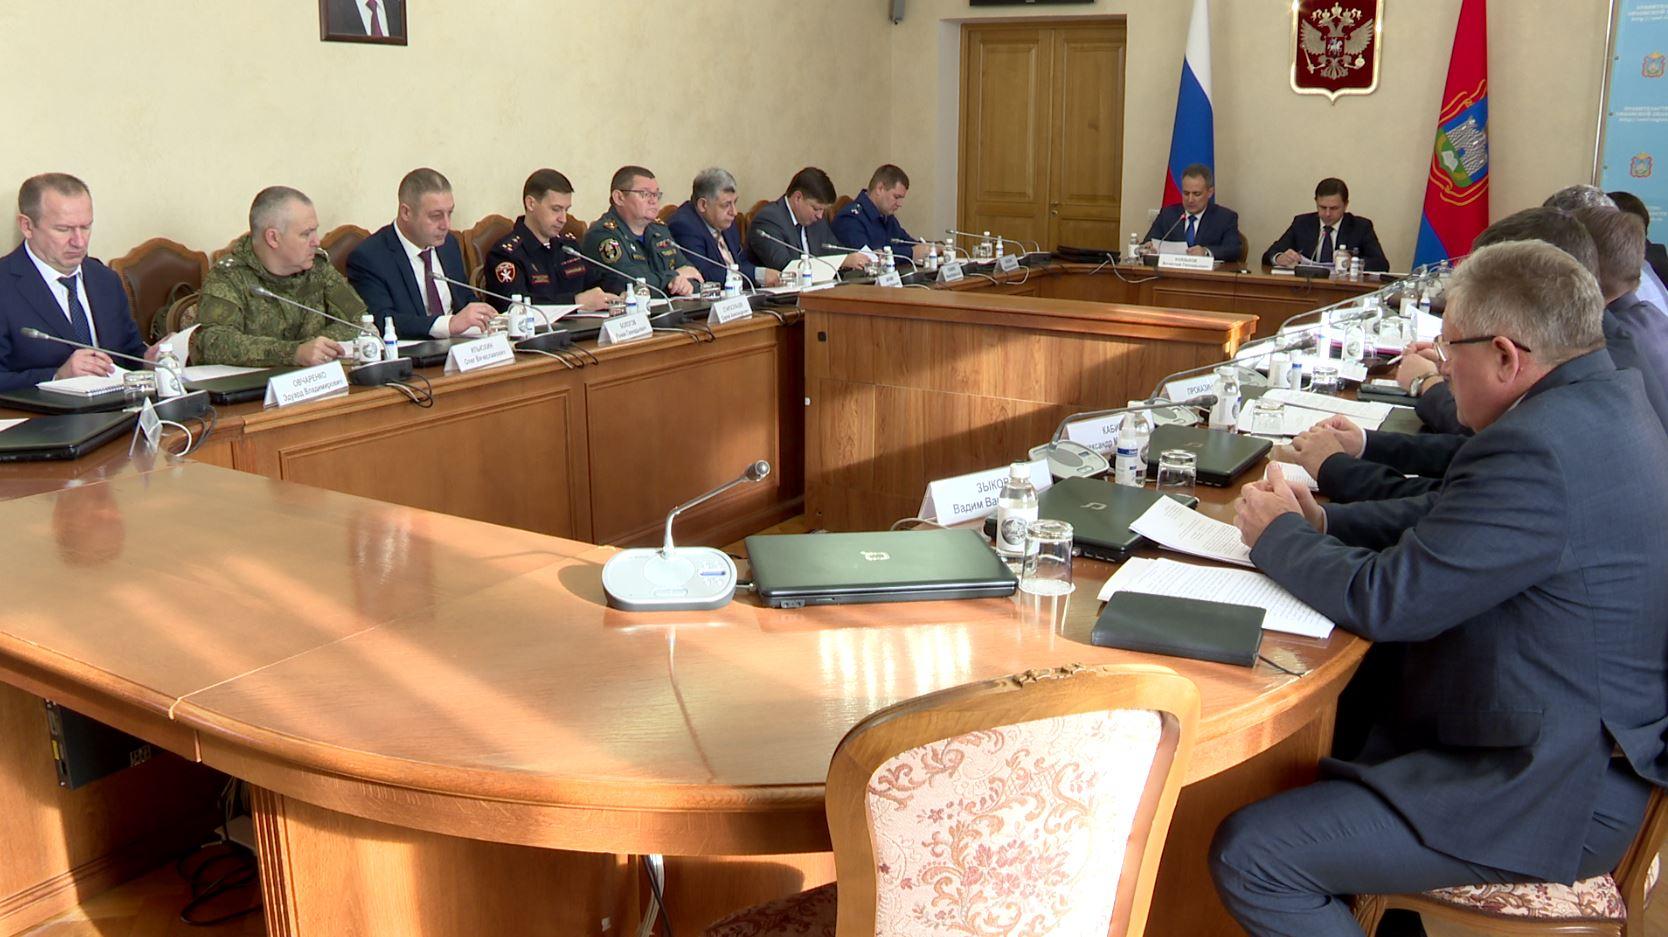 Безопасность при проведении ноябрьских праздников обсудили на заседании в Орловской области